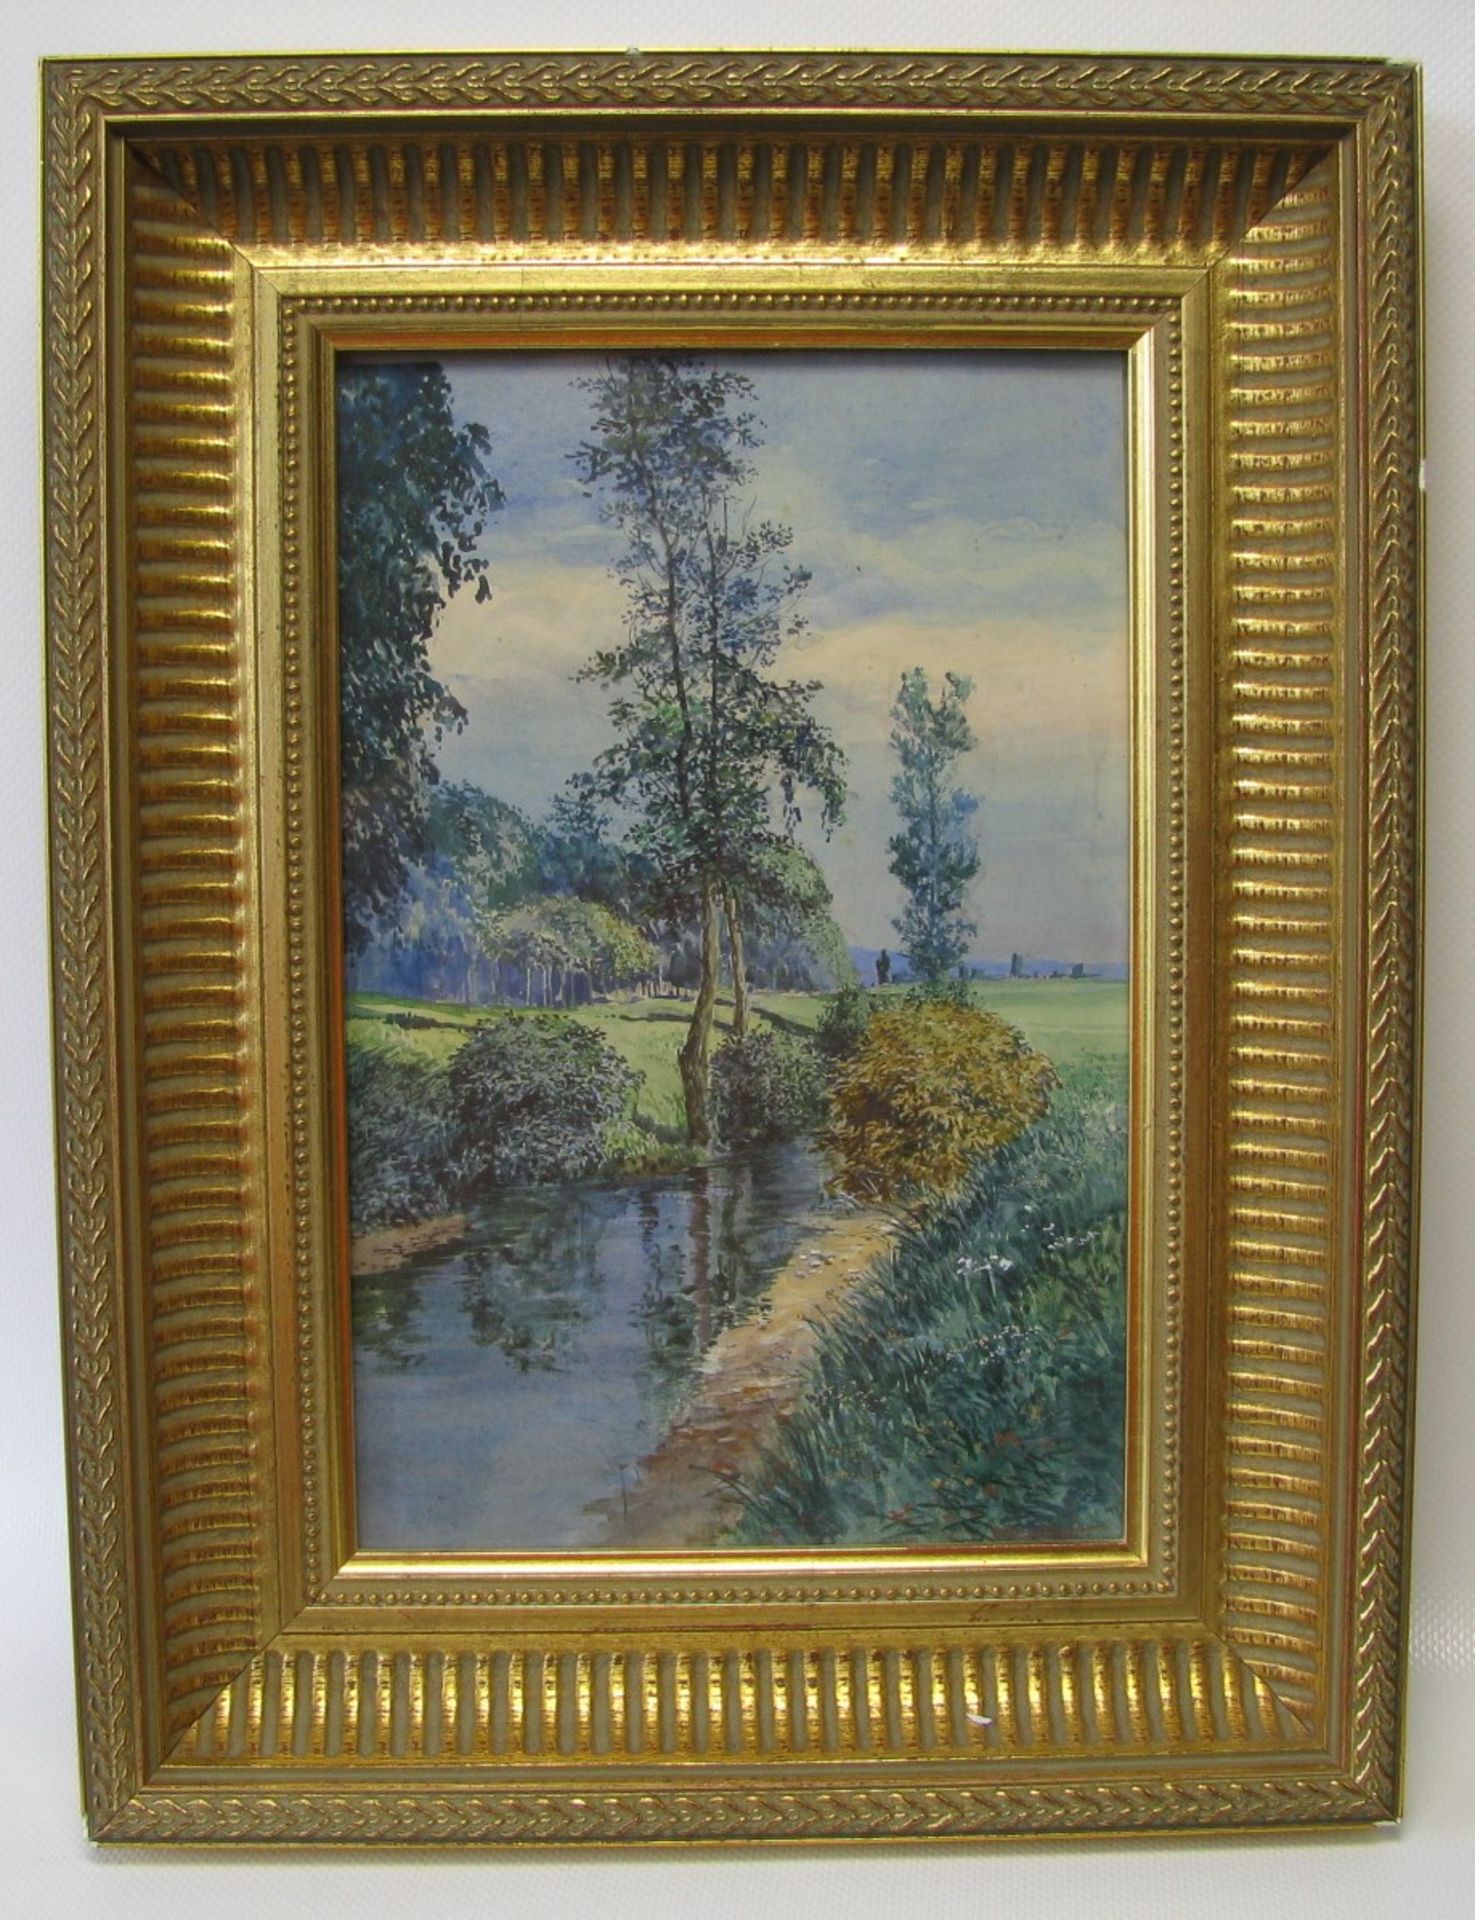 Bernheier, O., "Sommerliche Landschaft mit Bachlauf", re.u.sign., Aquarell, 25,5 x 17 cm, R.